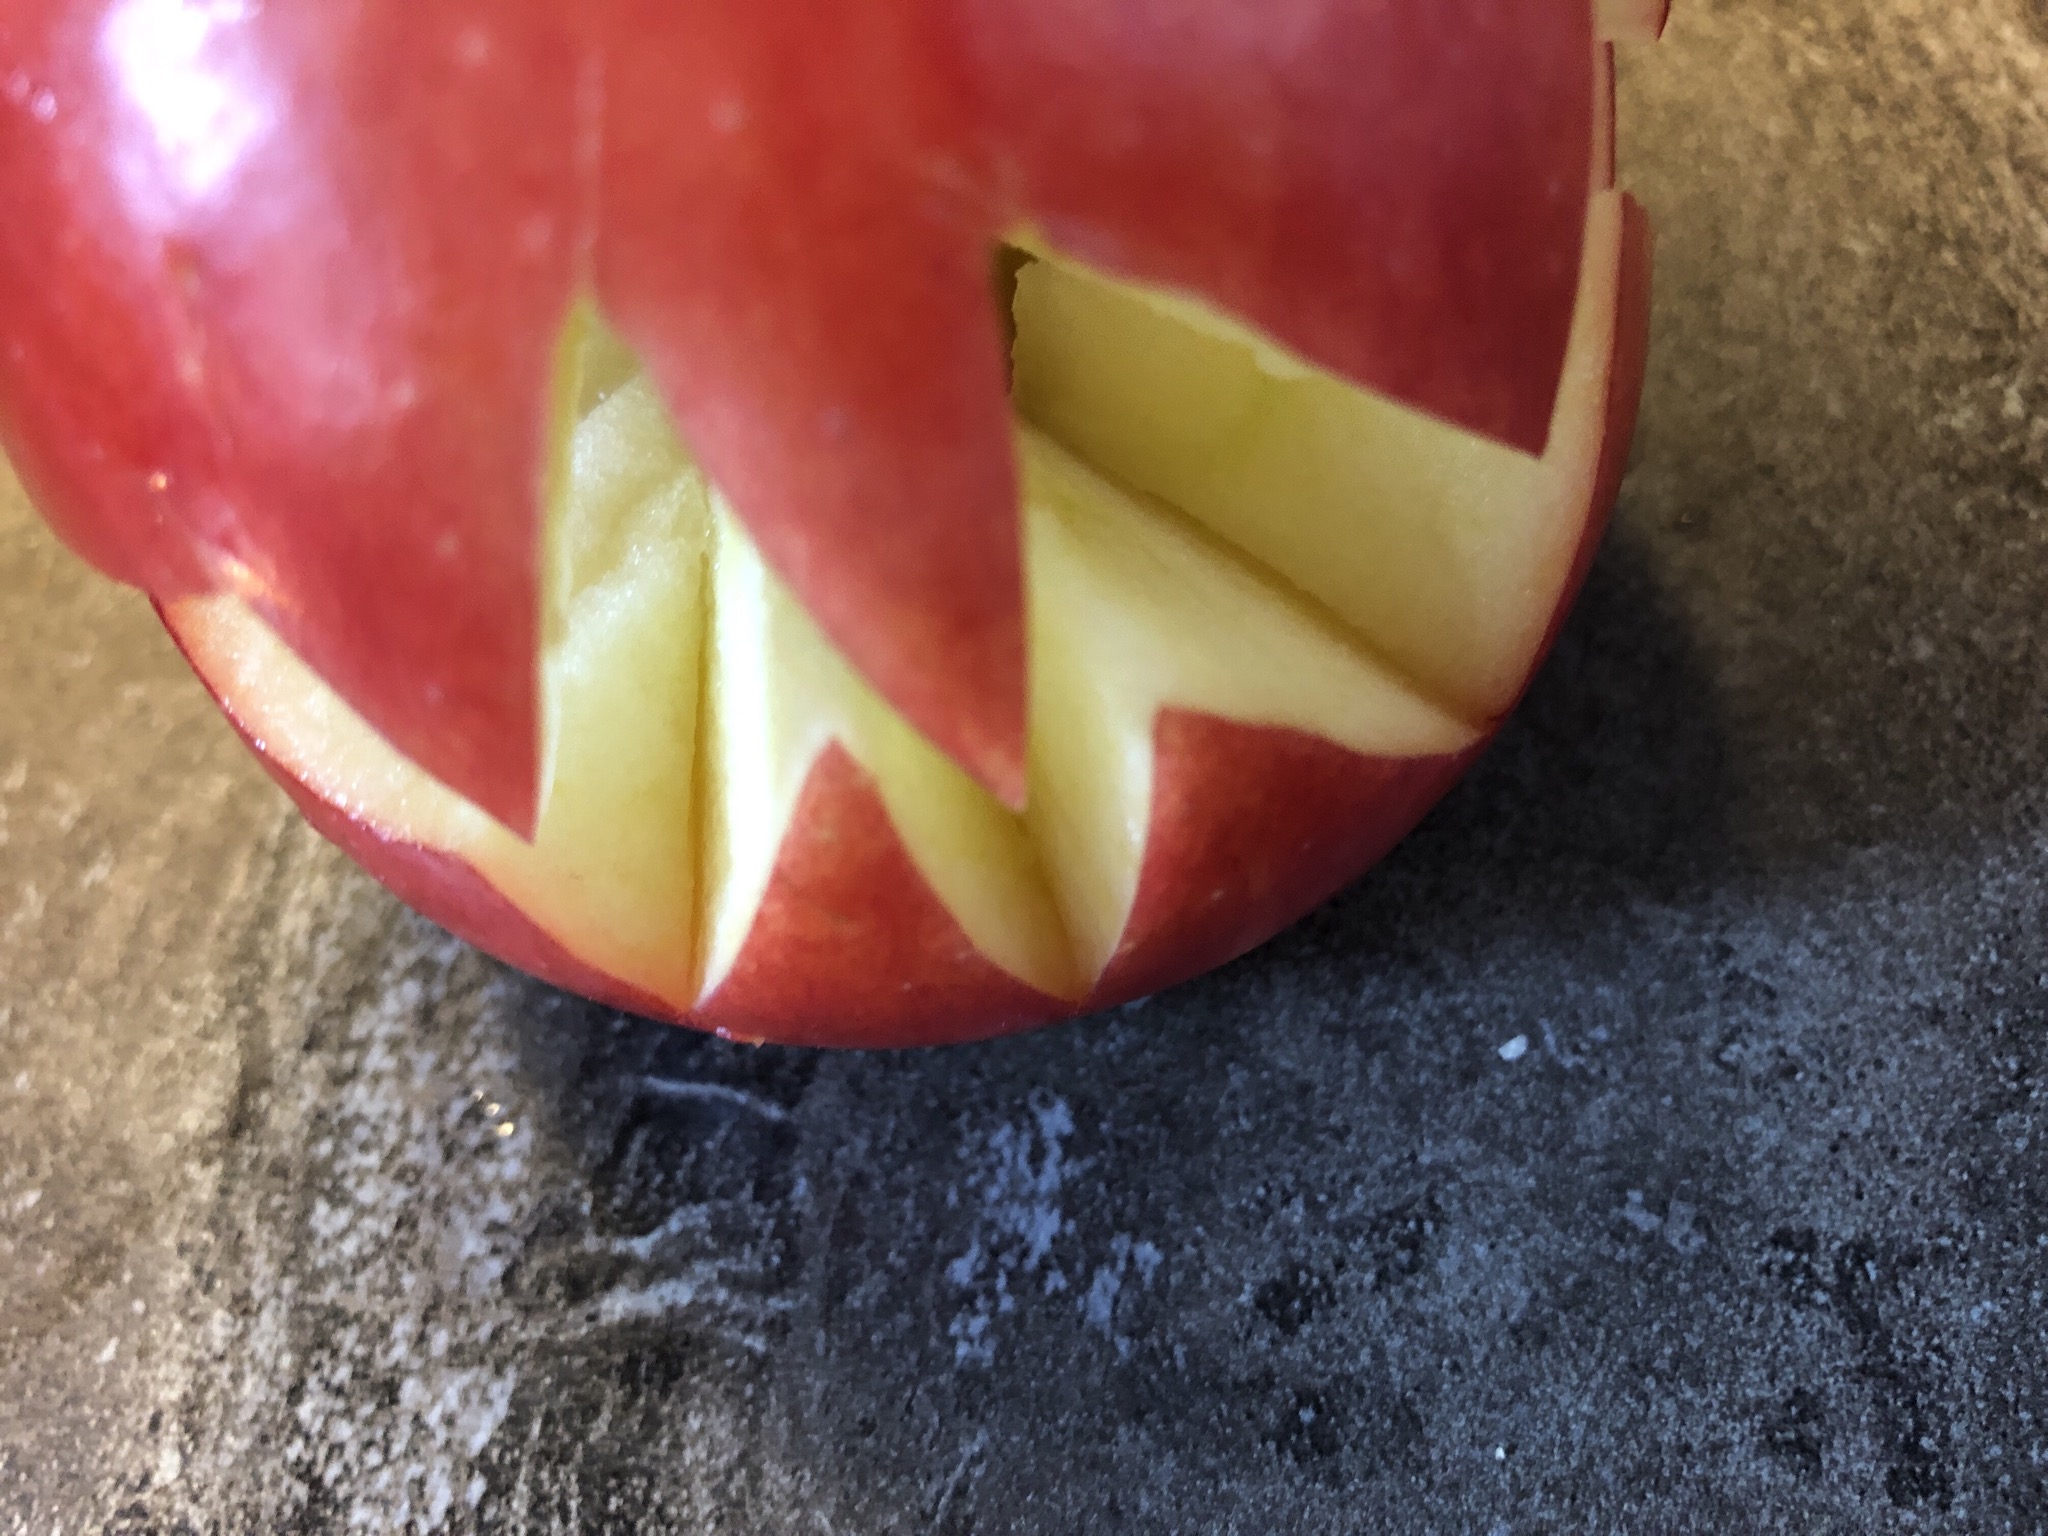 Bild zum Schritt 4 für das Bastel- und DIY-Abenteuer für Kinder: 'Den geschnittenen Apfel vorsichtig auseinander drehen.'